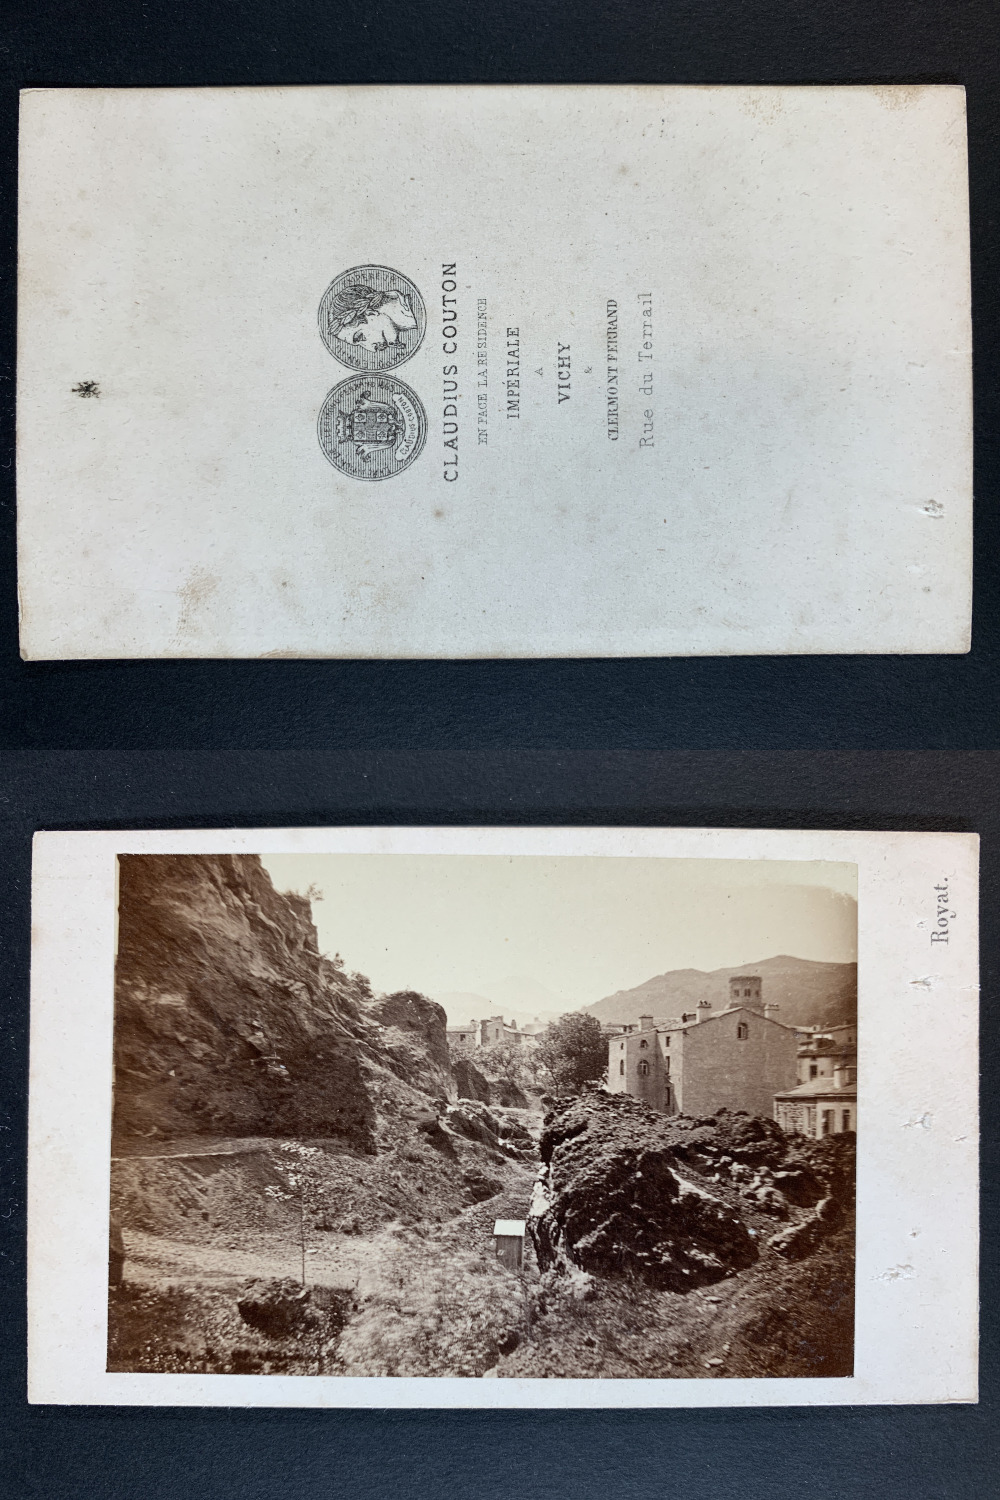 Claudius Couton, France, Royat, Panorama Vintage cdv albumen print, CDV, print